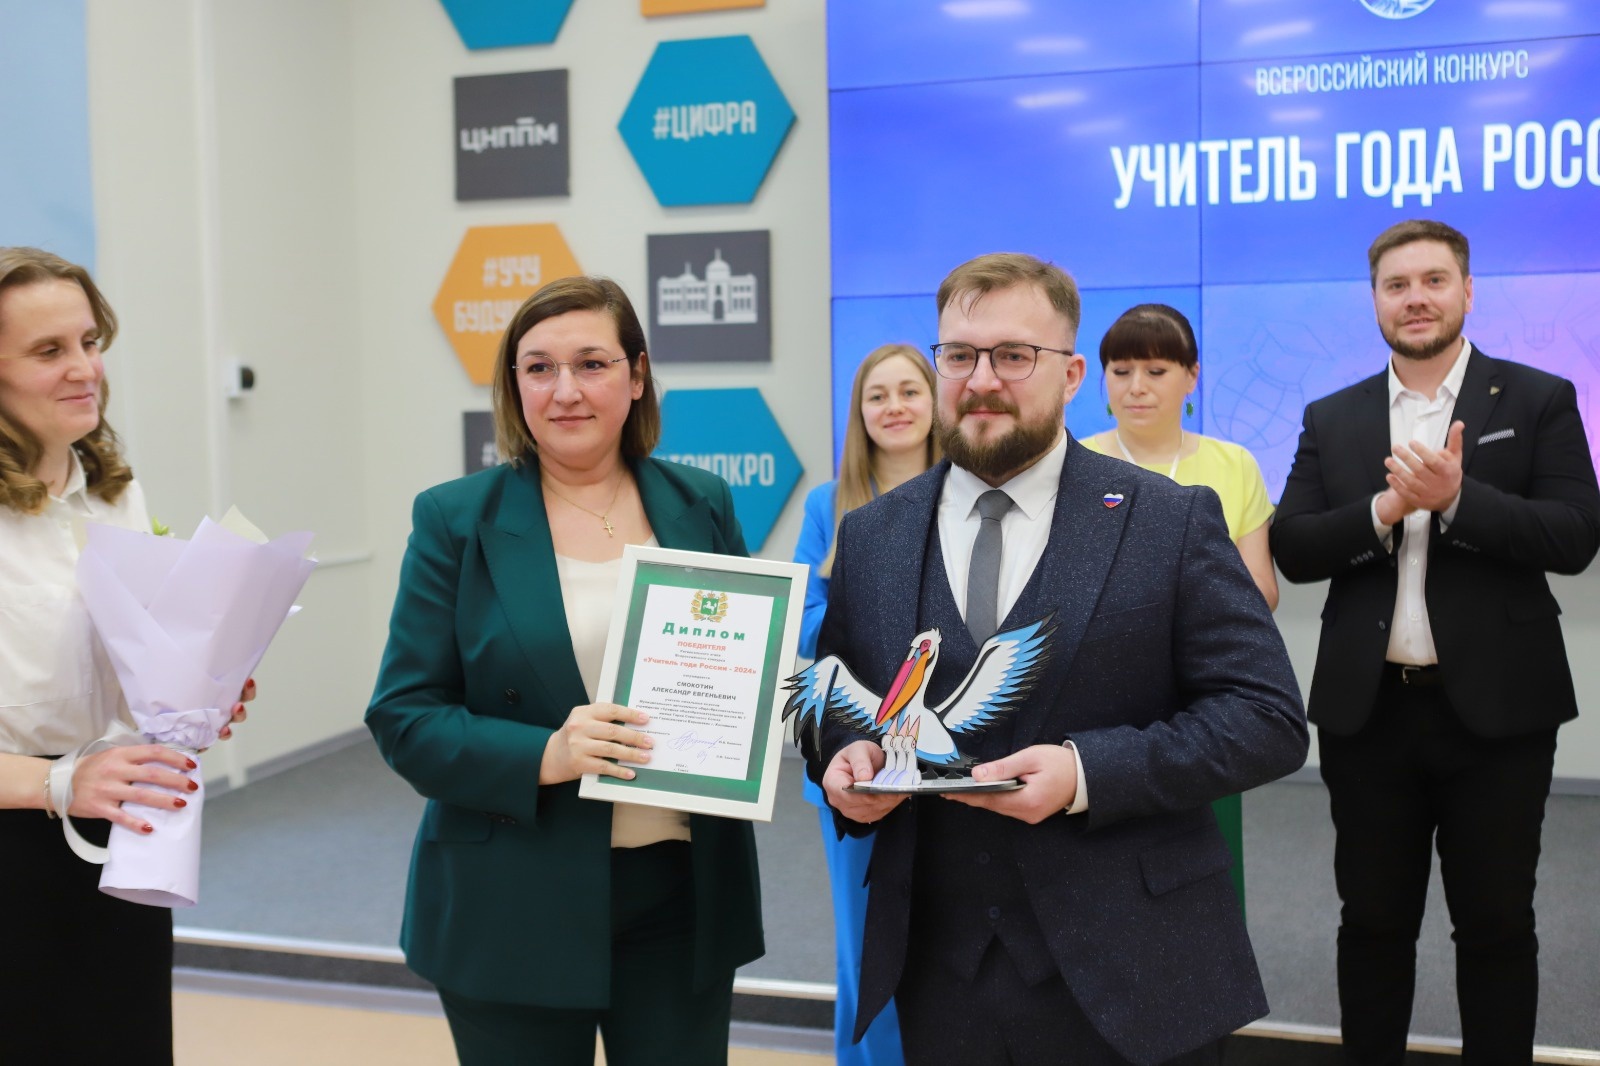 Выпускник ФПСО одержал победу в региональном этапе Всероссийского профессионального конкурса «Учитель года России»